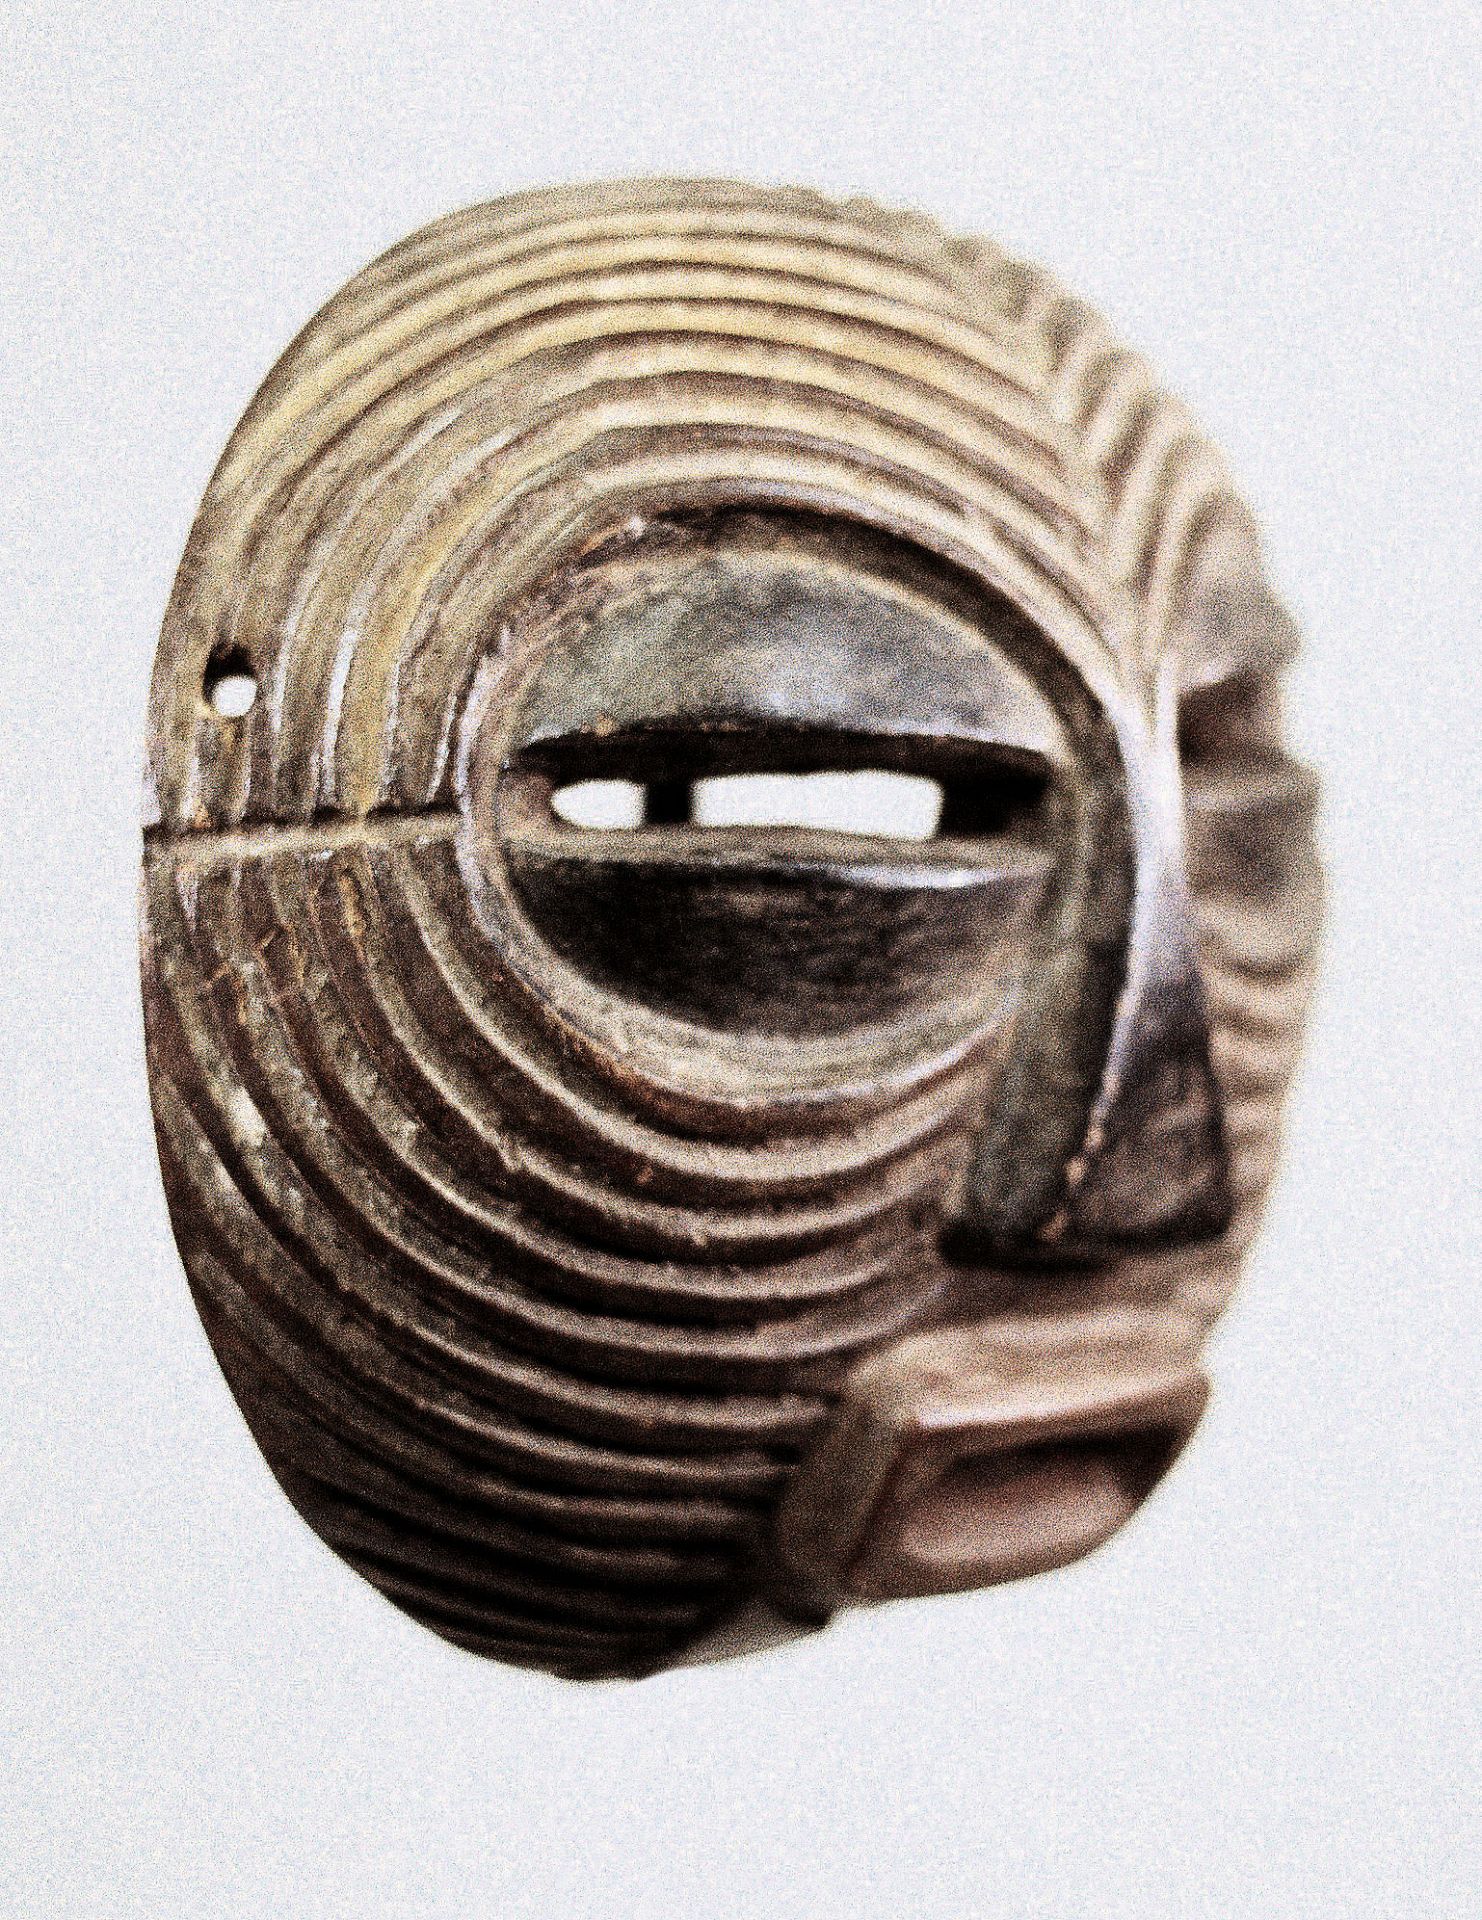 Kifwebe mask of the Luba, Congo - Image 2 of 2